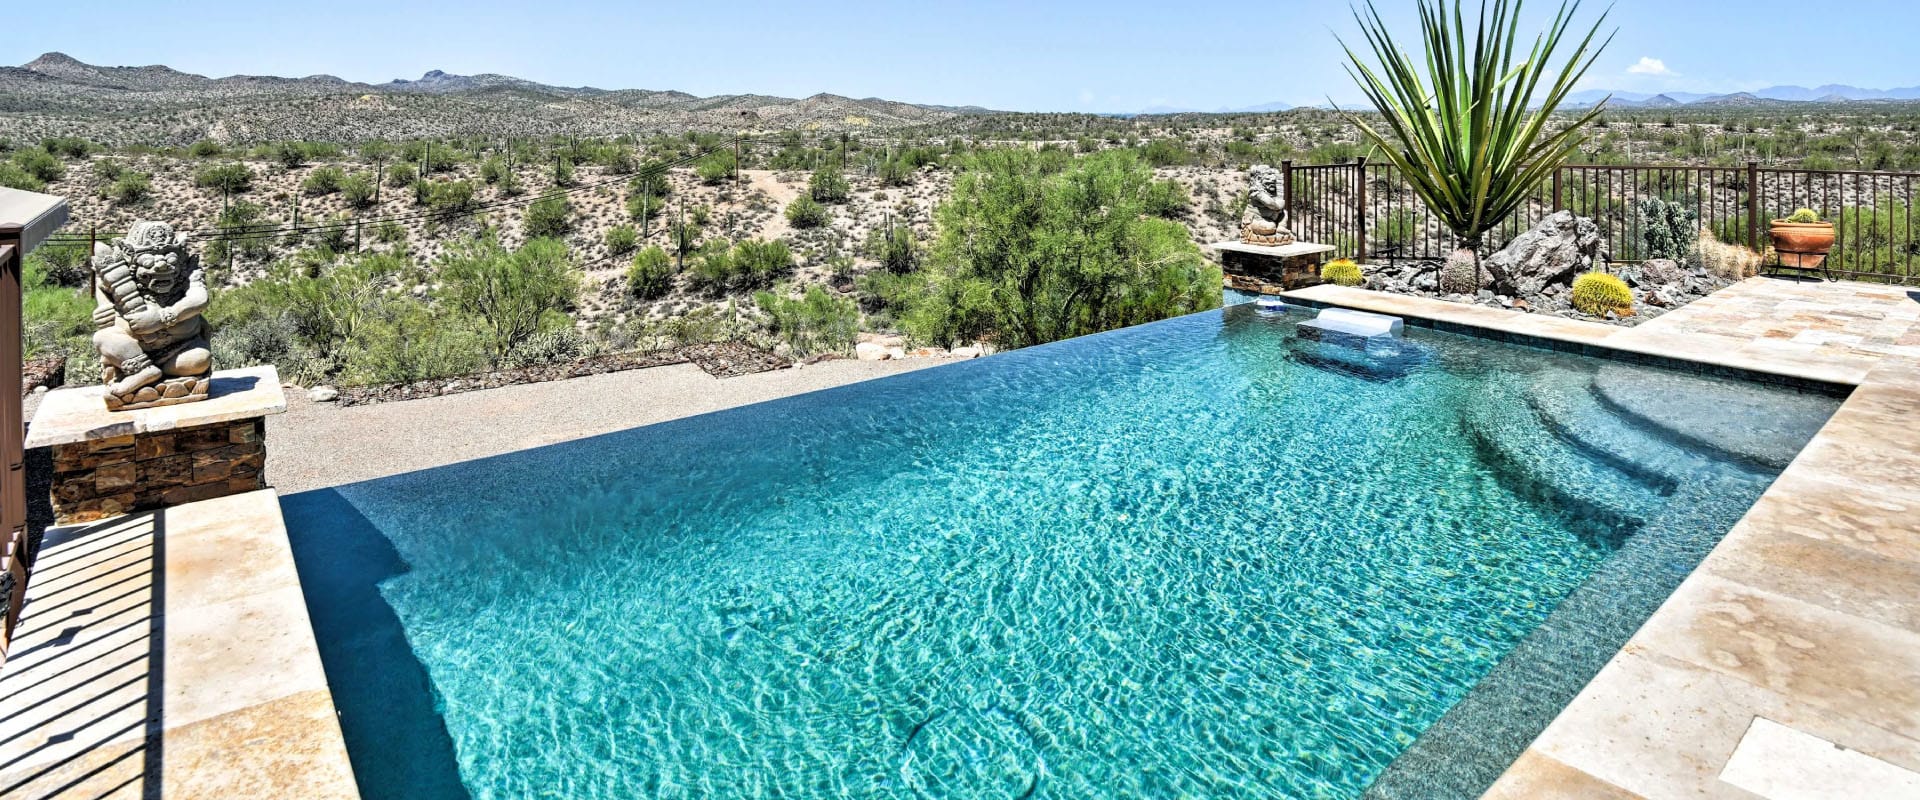 Infinity pool overlooking the desert